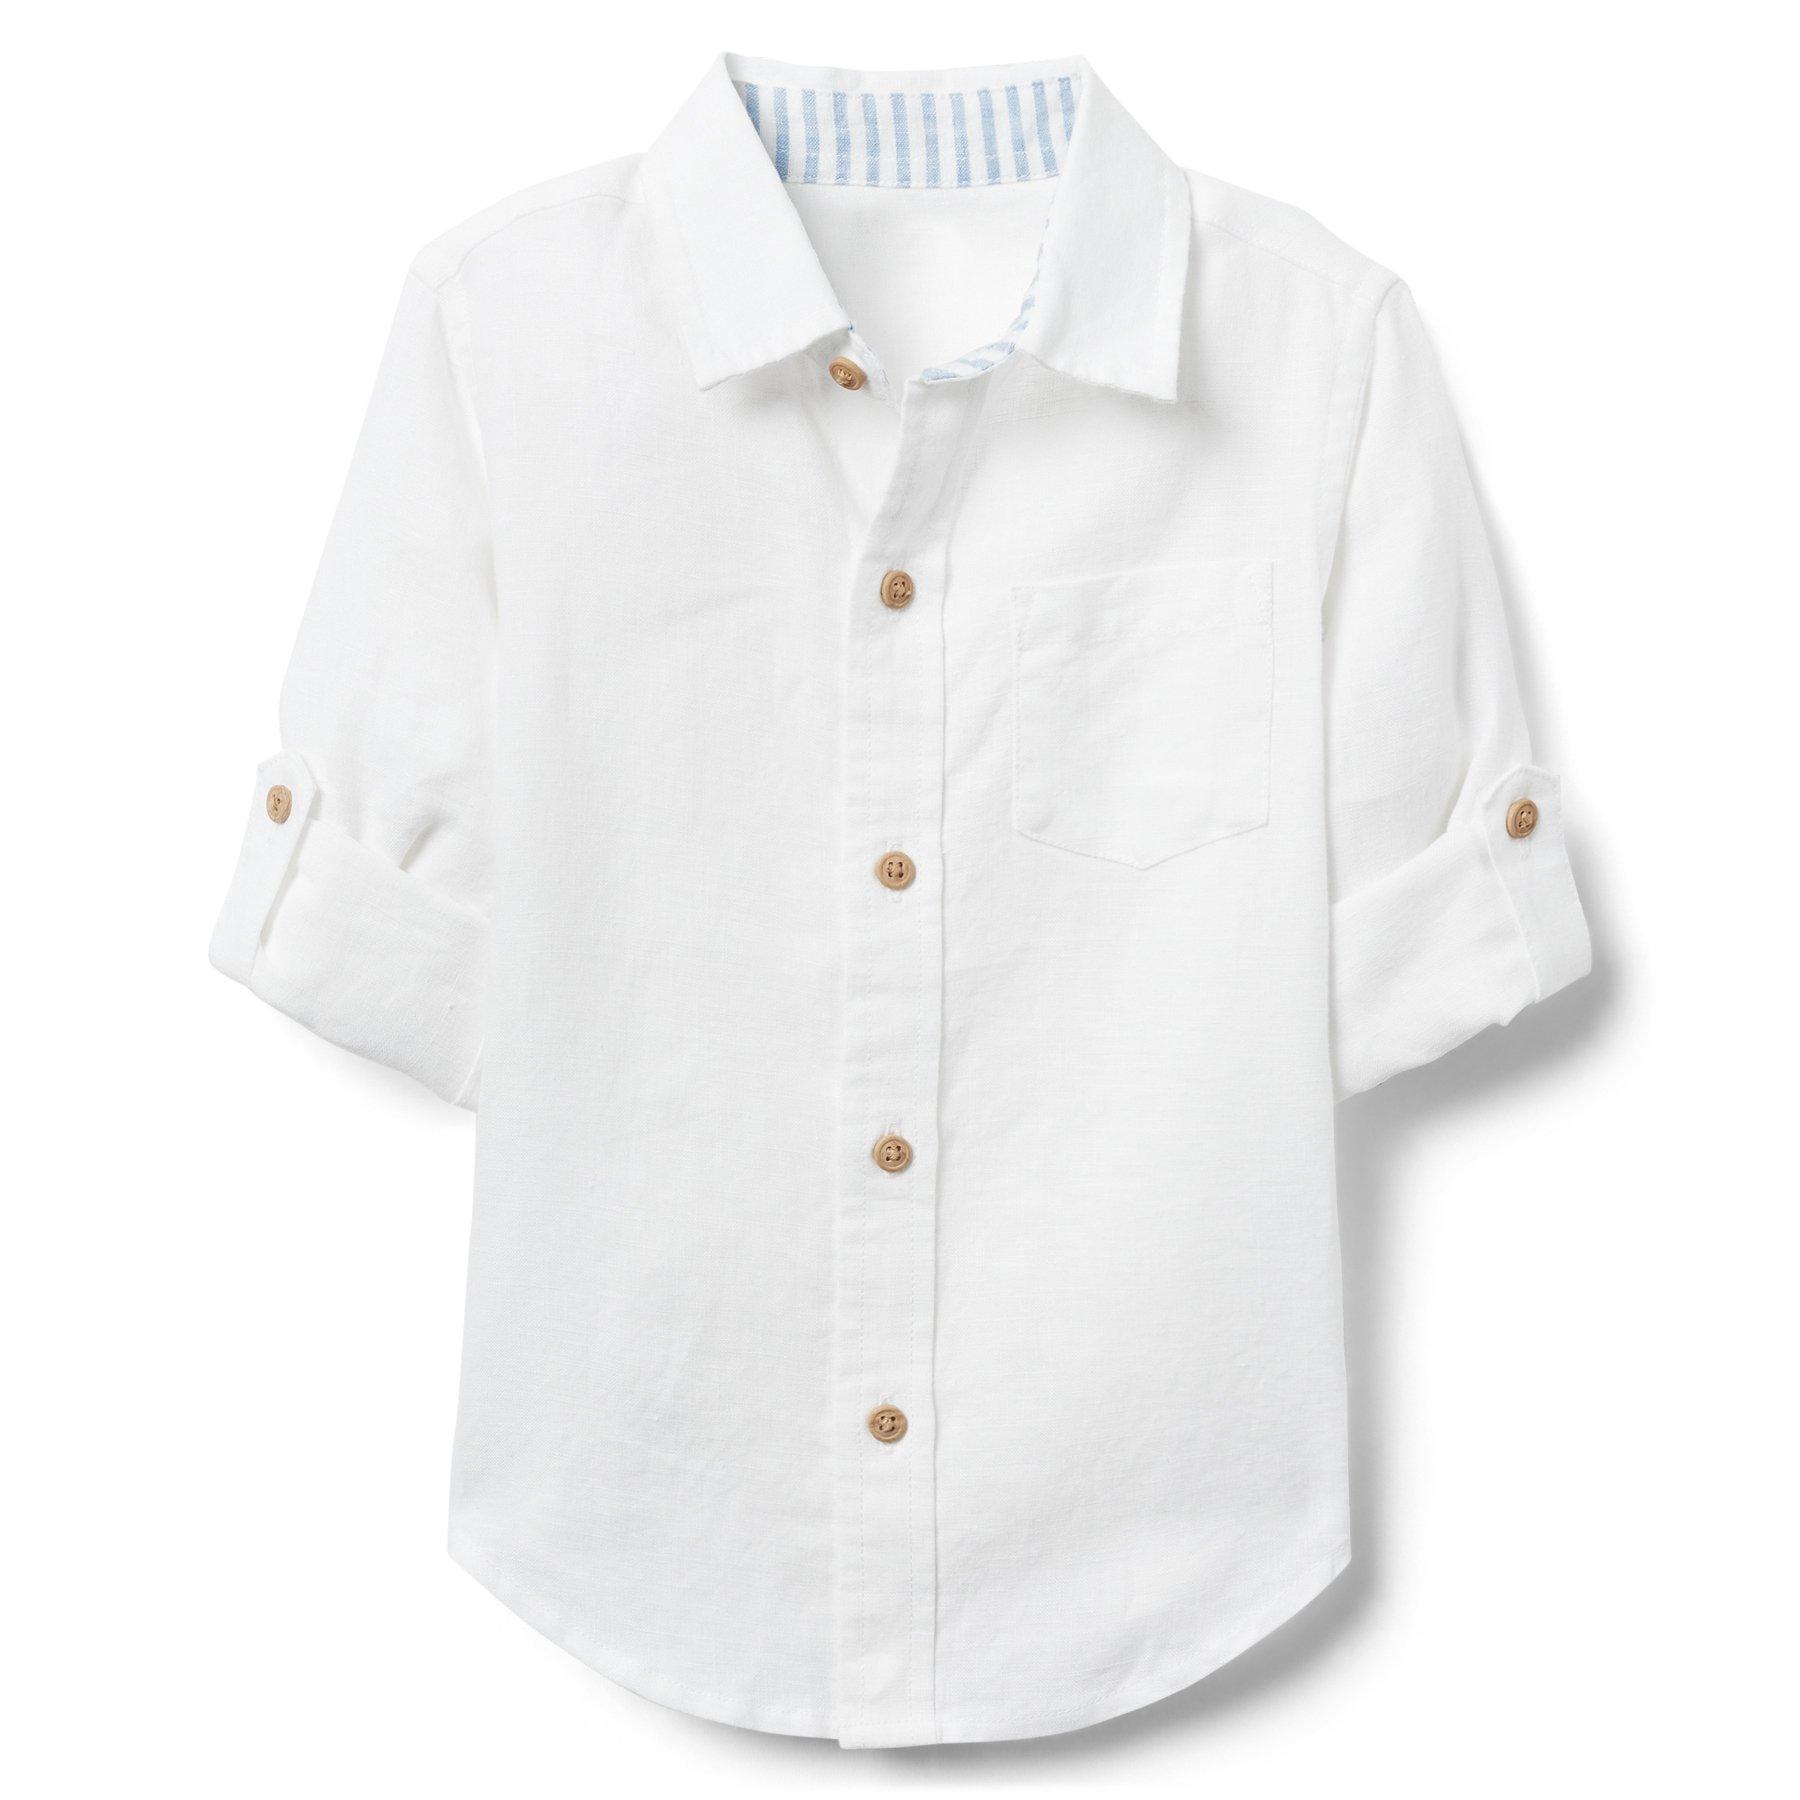 AERIN Linen Roll-Cuff Shirt 